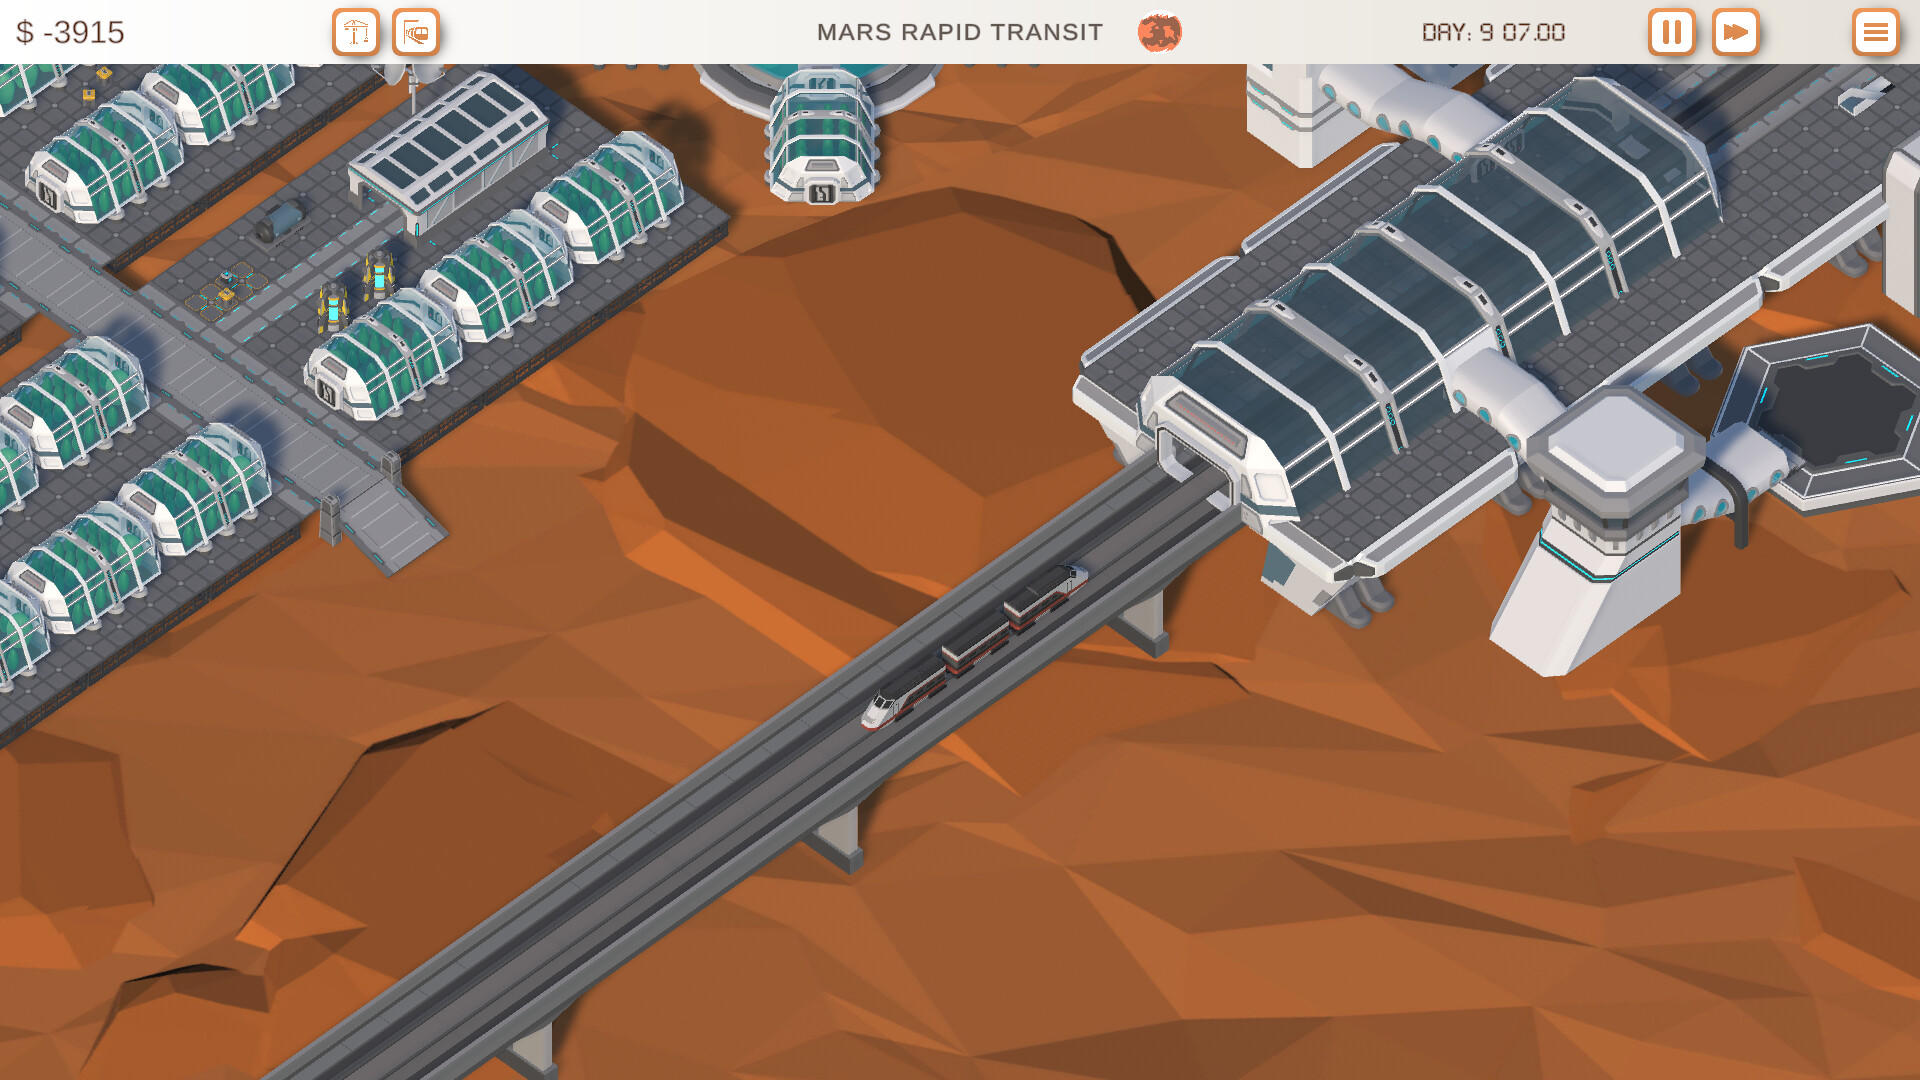 Screenshot 1 of Vận chuyển nhanh trên sao Hỏa 